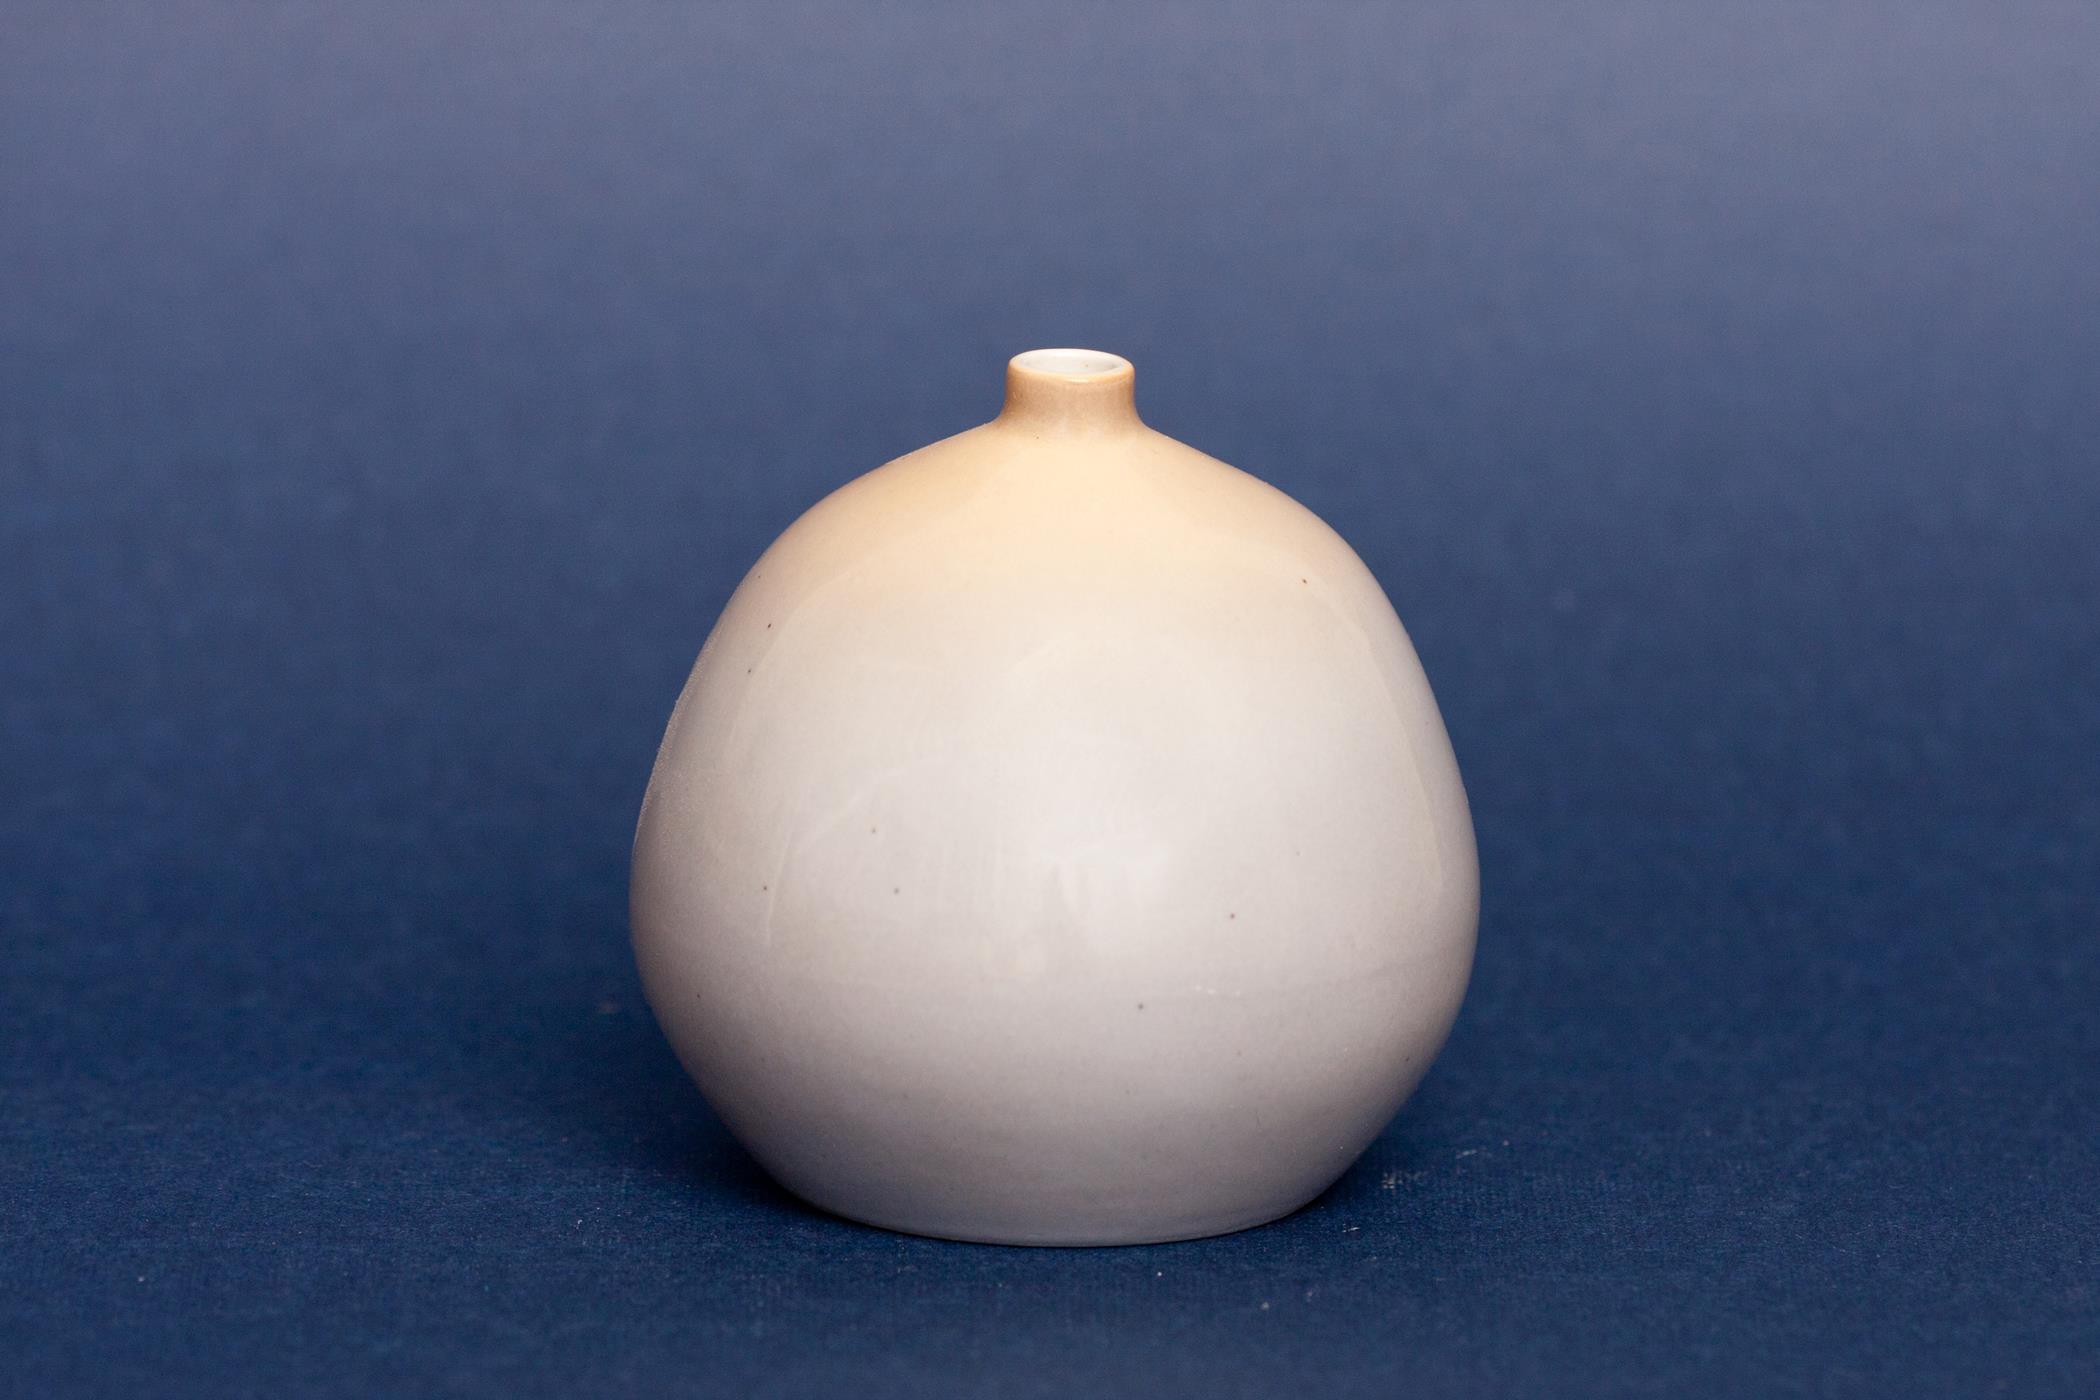 Kőbányai Porcelángyár váza